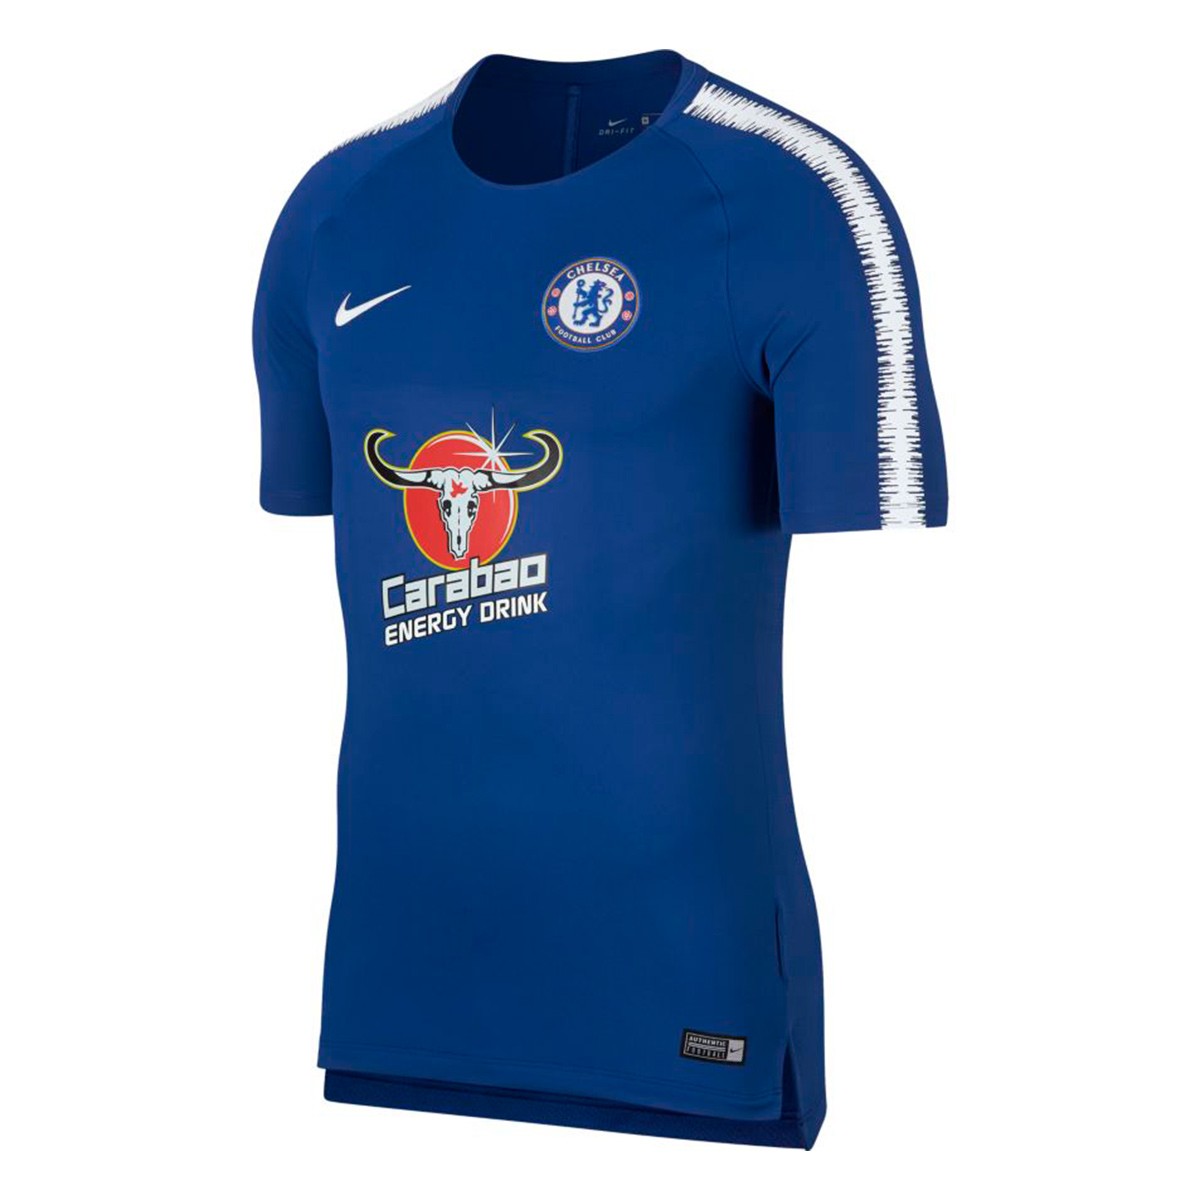 Camiseta Nike Chelsea FC Squad 2018-2019 Rush blue-White - Tienda de fútbol  Fútbol Emotion